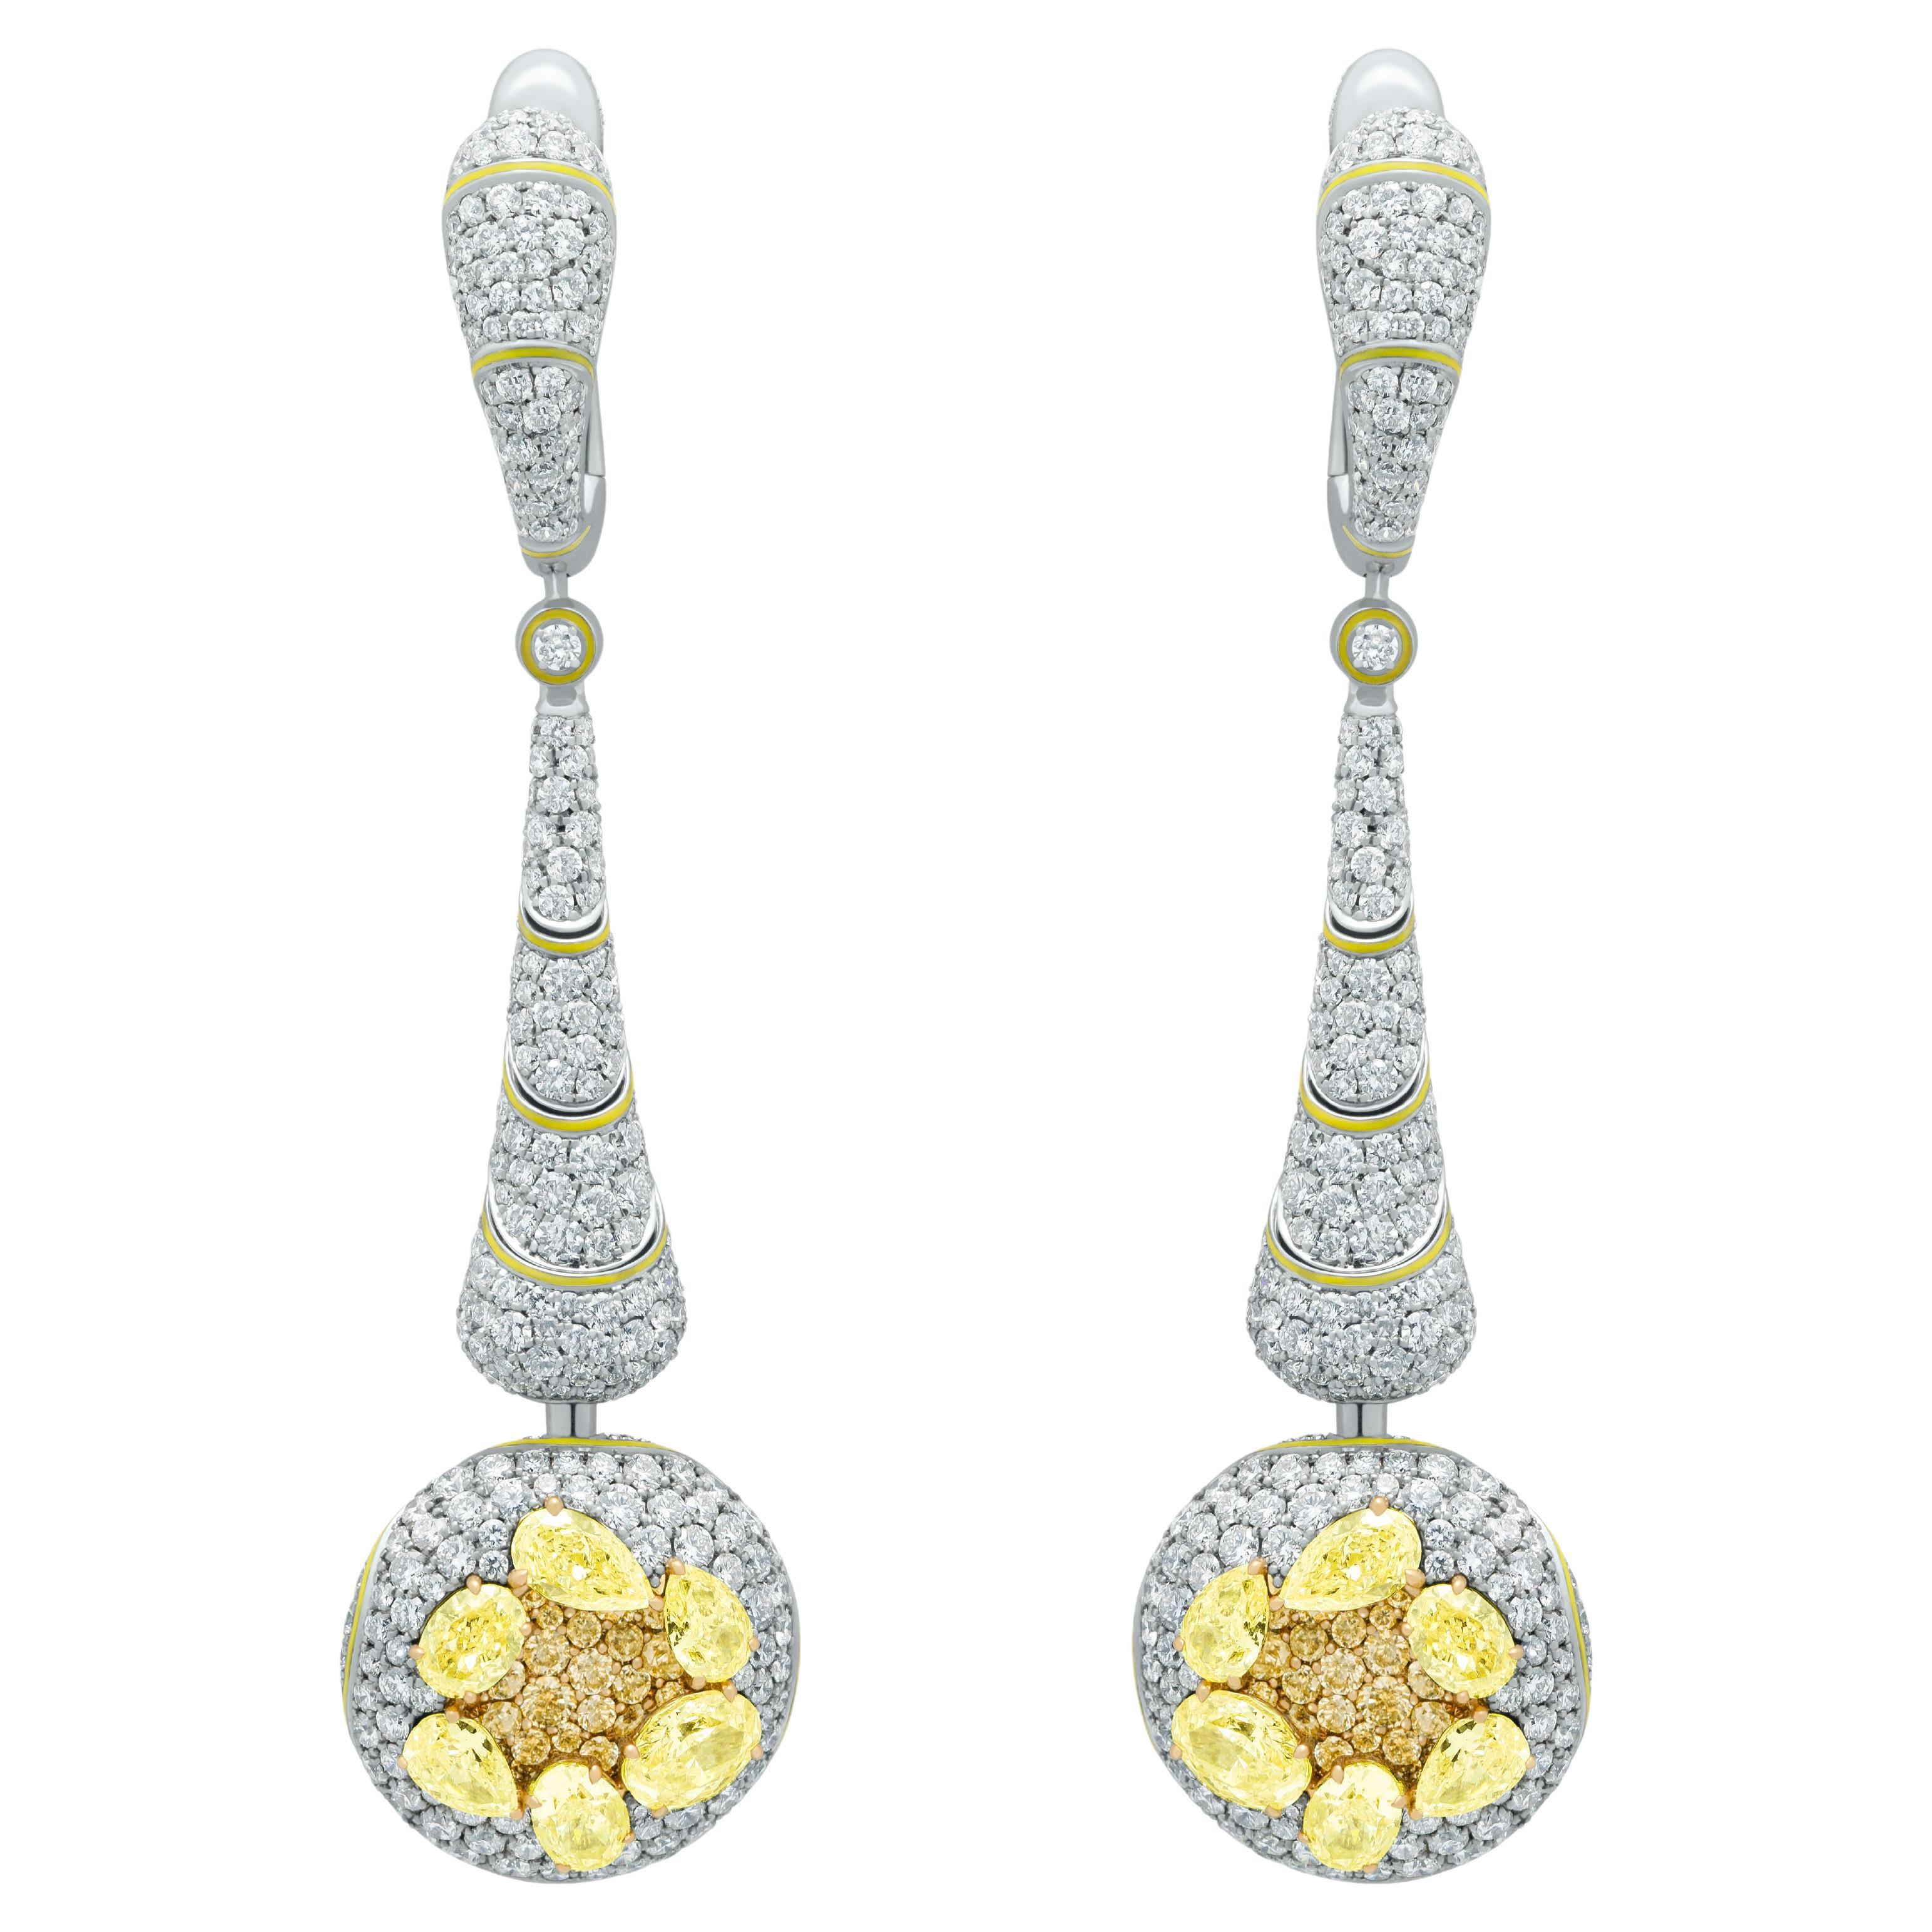 Boucles d'oreilles hautes en or blanc 18 carats avec diamants jaunes et diamants blancs émaillés